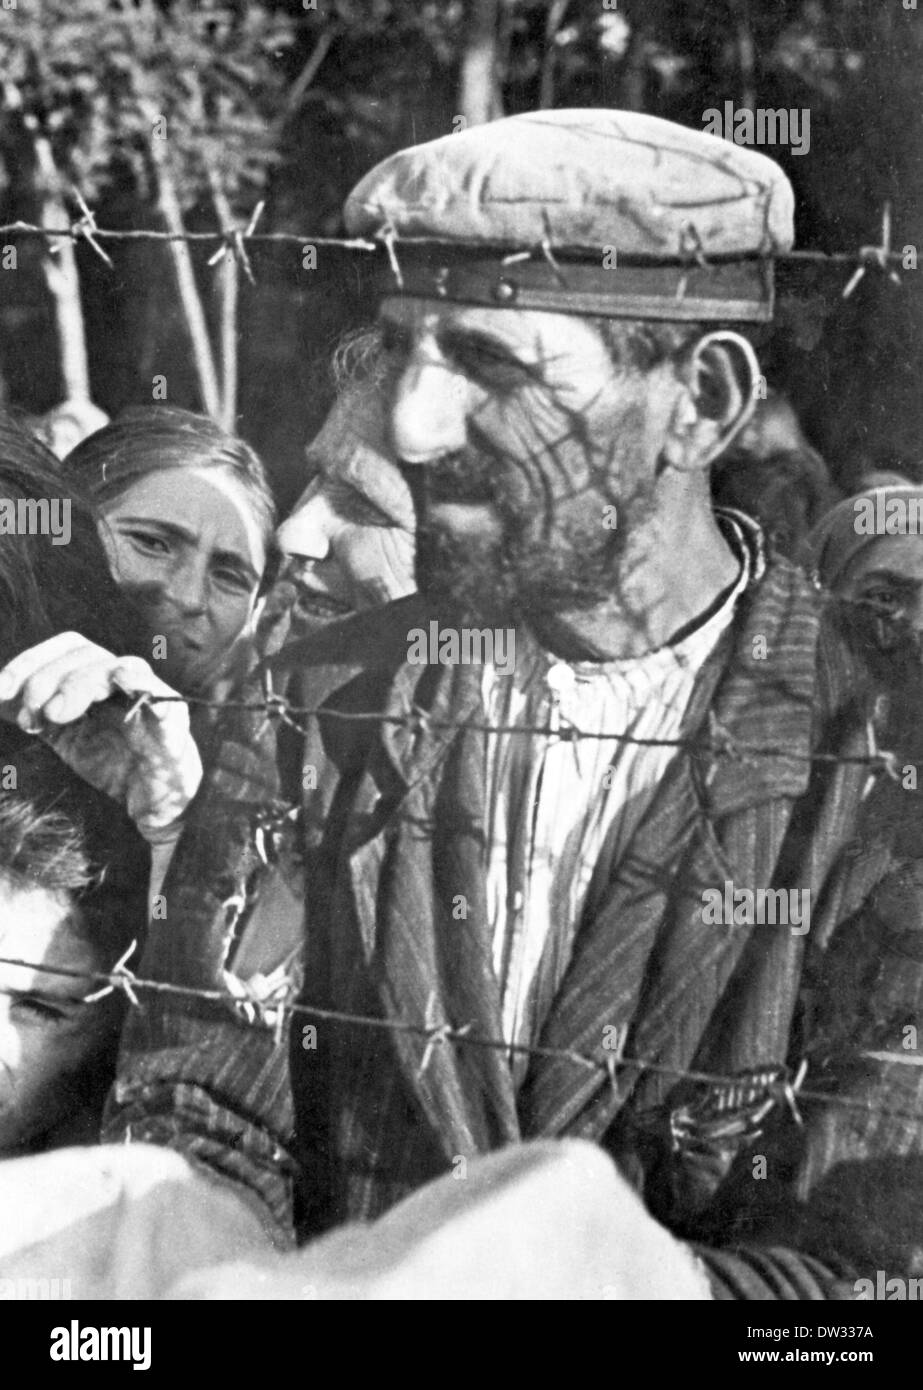 Prigionieri ebrei a stare dietro un filo spinato in un campo di concentramento in Bessarabia (oggi la Romania), attorno al 1941/1942. Con l'attacco tedesco all Unione Sovietica nel giugno 1941, truppe rumene (Armata Romana) riconquistata Bessarabia, che fu occupata dai sovietici. In questo contesto la popolazione ebraica fu accusato di sympathizing con l Unione Sovietica, da essi considerata come liberatori nella luce di Hitler antisemita politica di sterminio in 1940. Come risultato nel 1941/42, il popolo ebraico sono stati deportati in campi di raccolta stabilito nella Transnistria (ora Ucraina e Moldavia), che era stato controllore Foto Stock